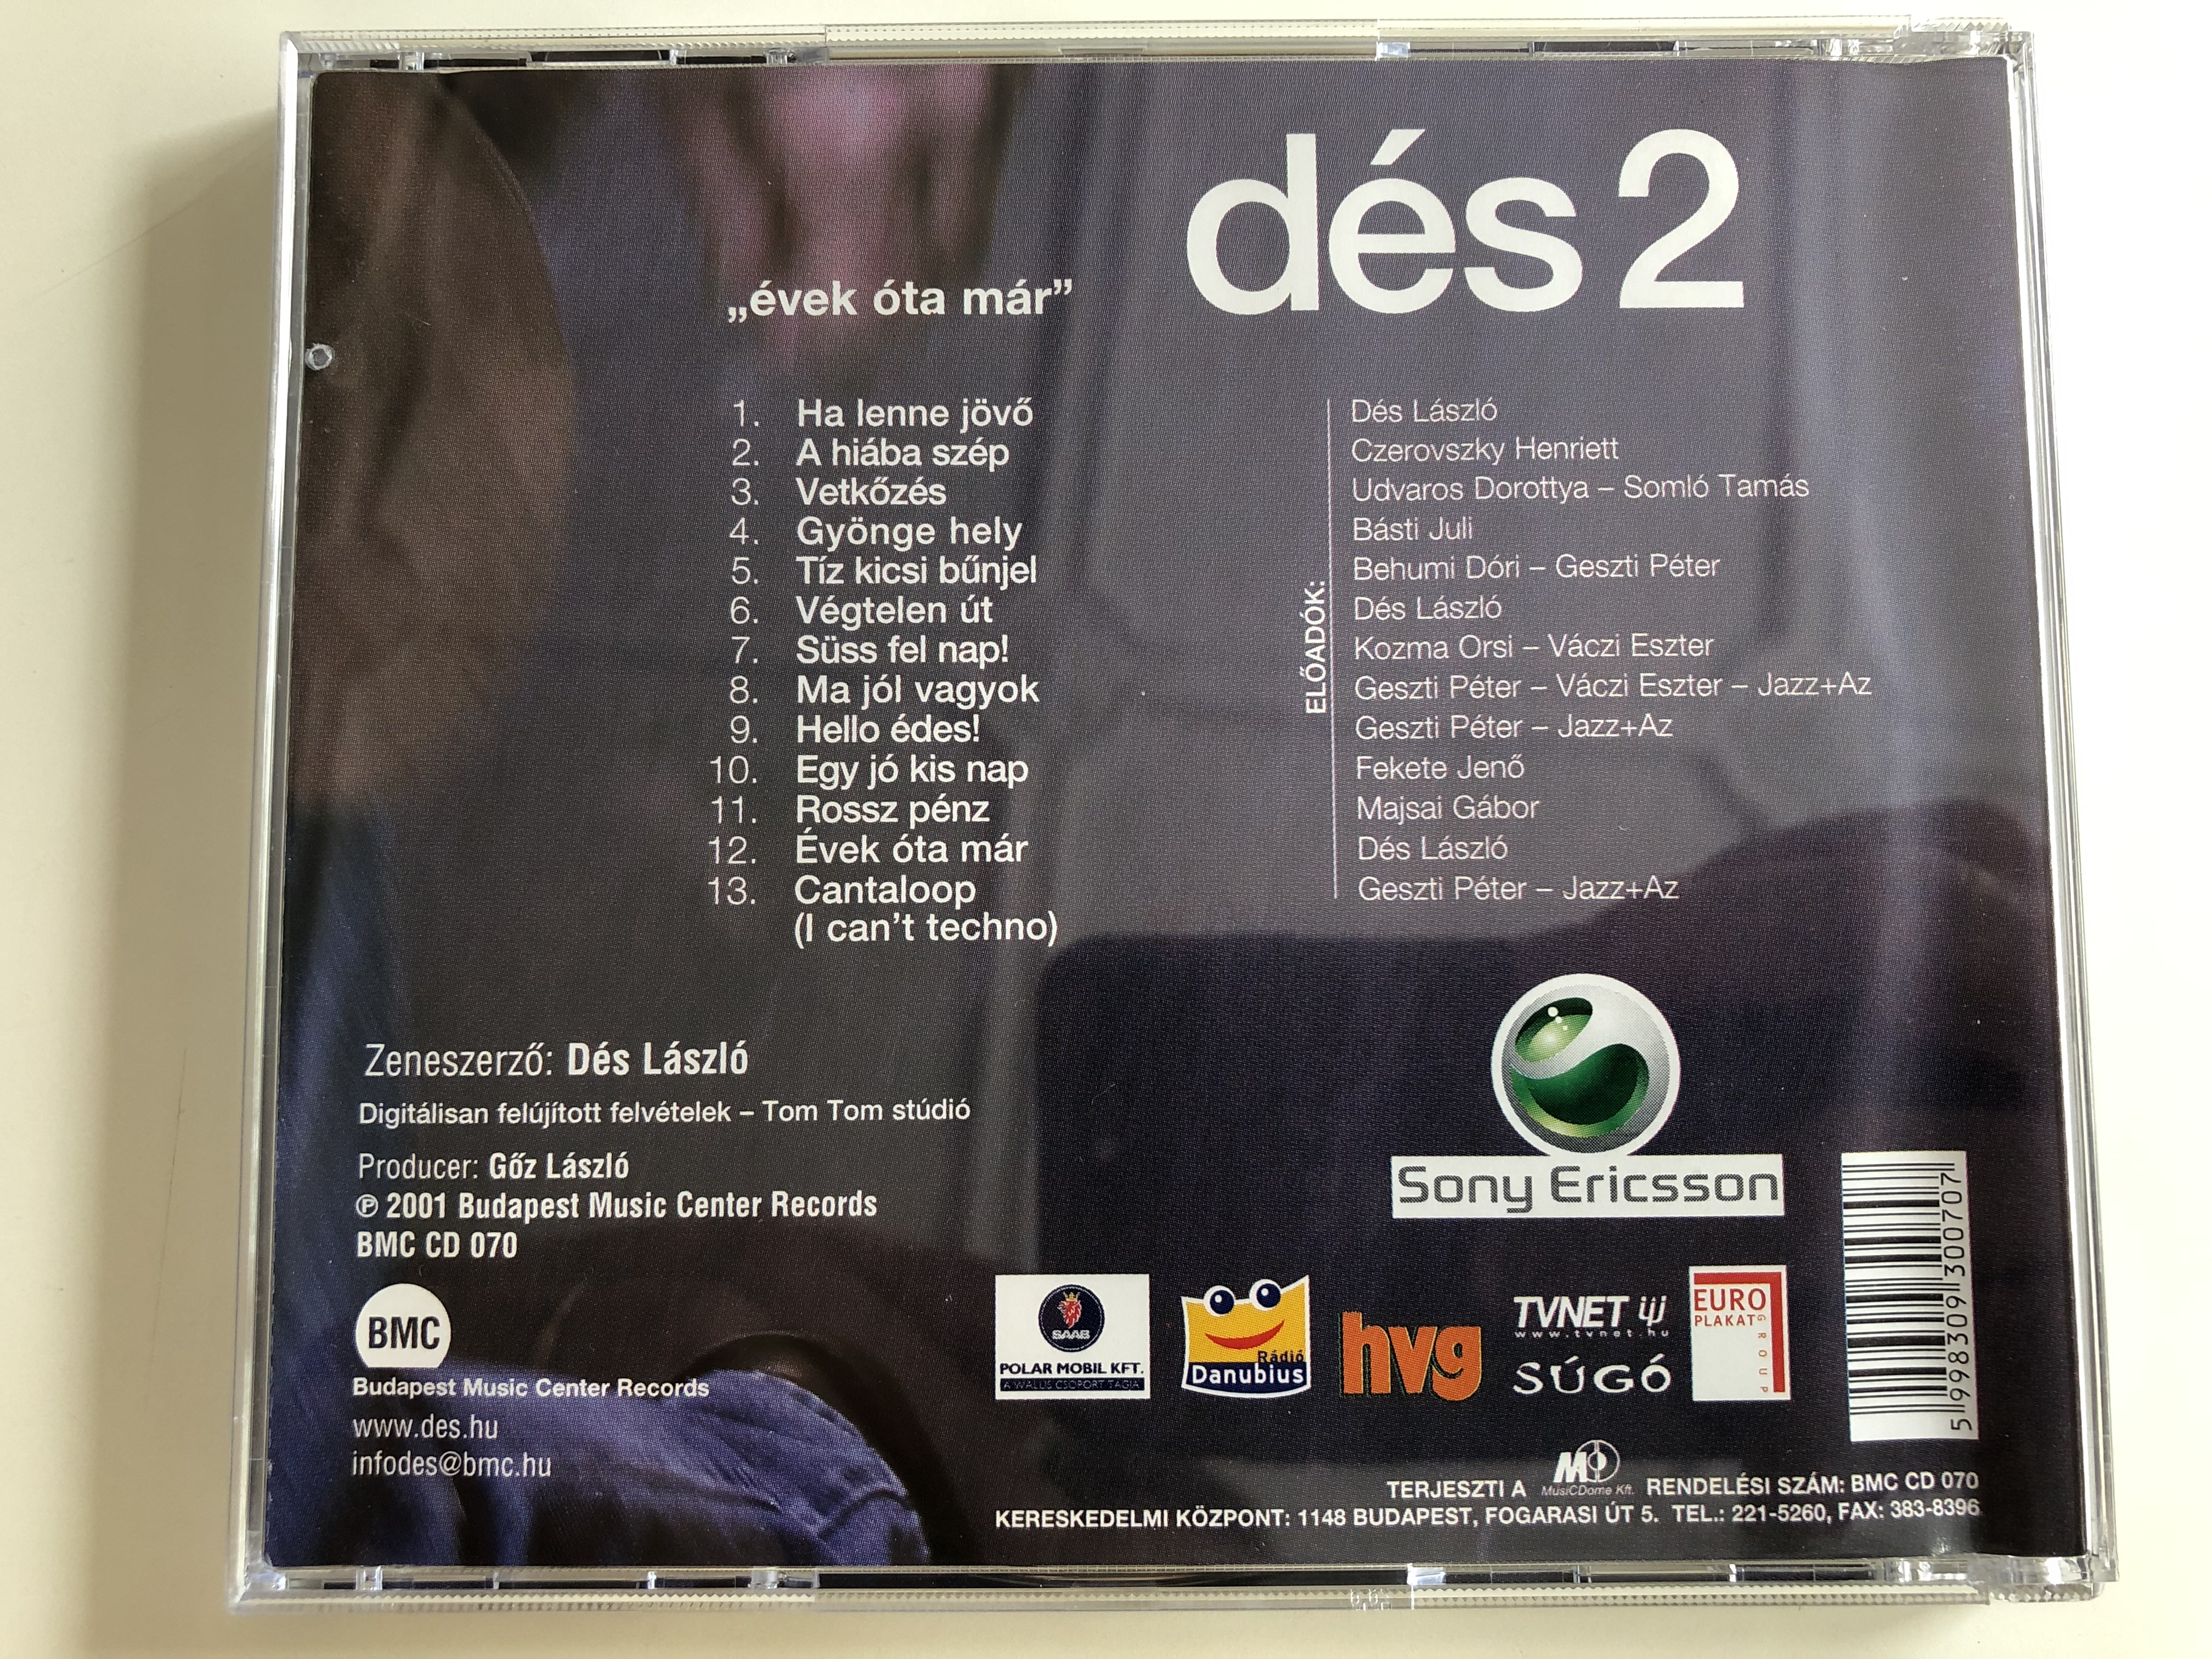 d-s-vek-ta-m-r-2-budapest-music-center-records-audio-cd-2001-bmc-cd-070-11-.jpg